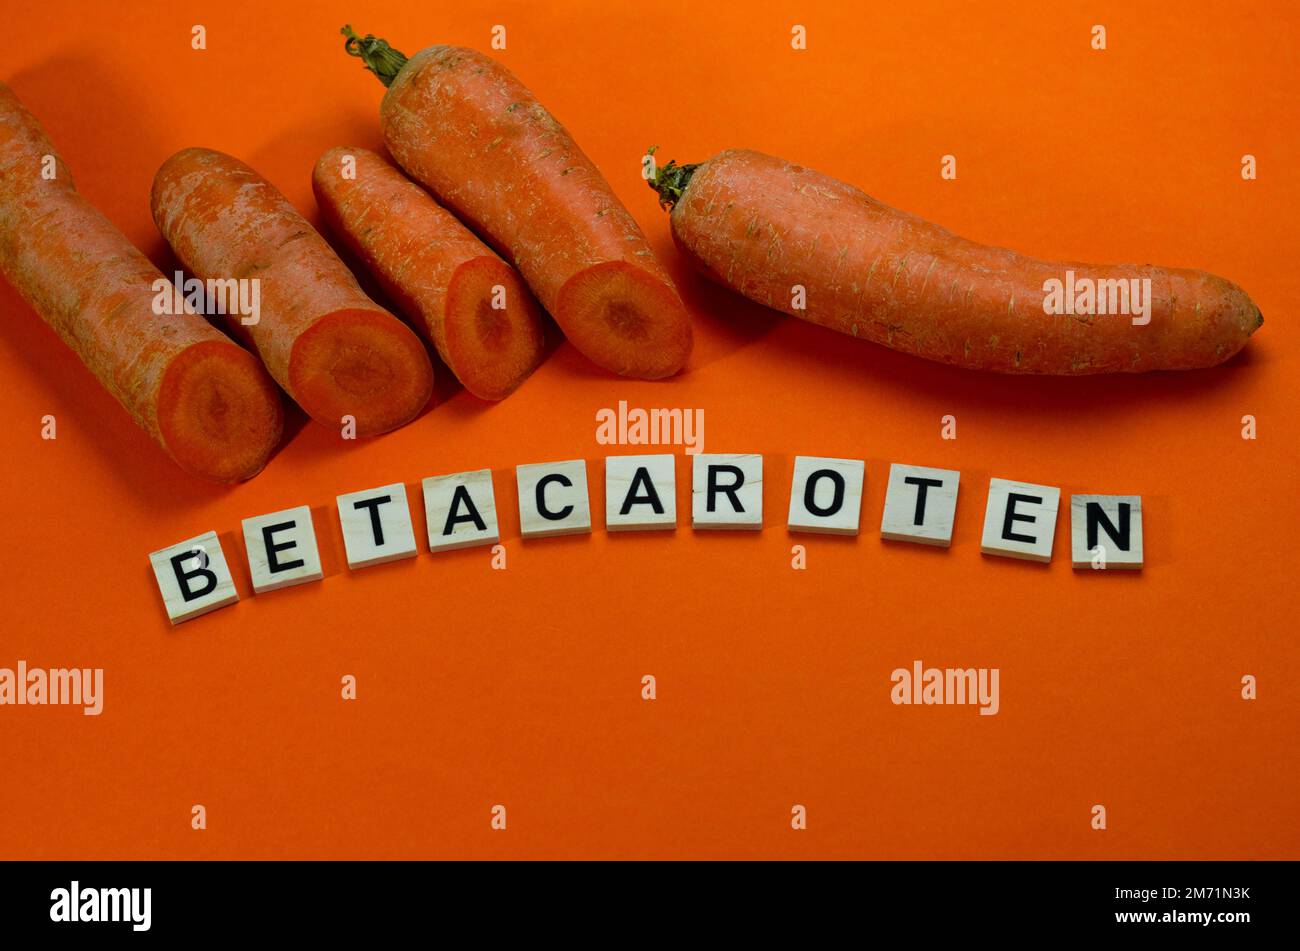 Orangefarbene Karotten auf orangefarbenem Hintergrund mit Draufsicht. Betacaroten-Konzept Stockfoto